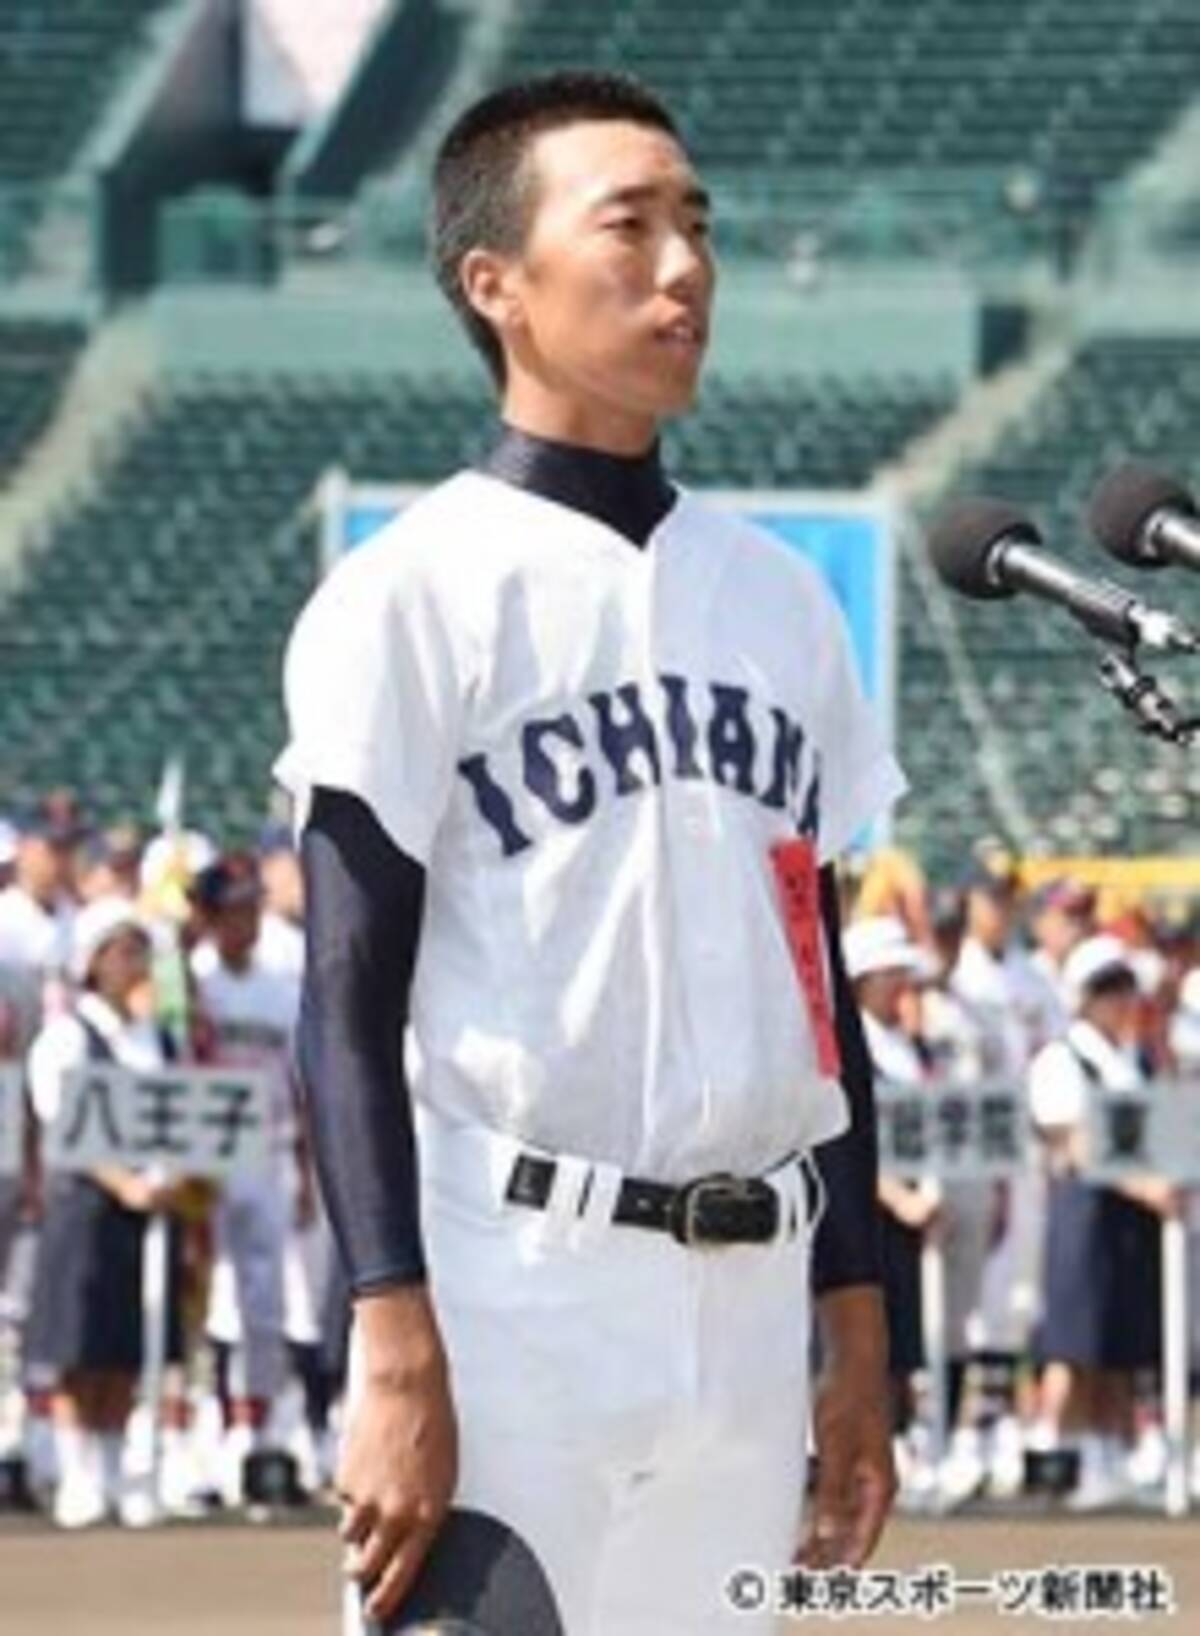 高校野球 開会式リハで被災地 熊本への重いにじむ 16年8月6日 エキサイトニュース